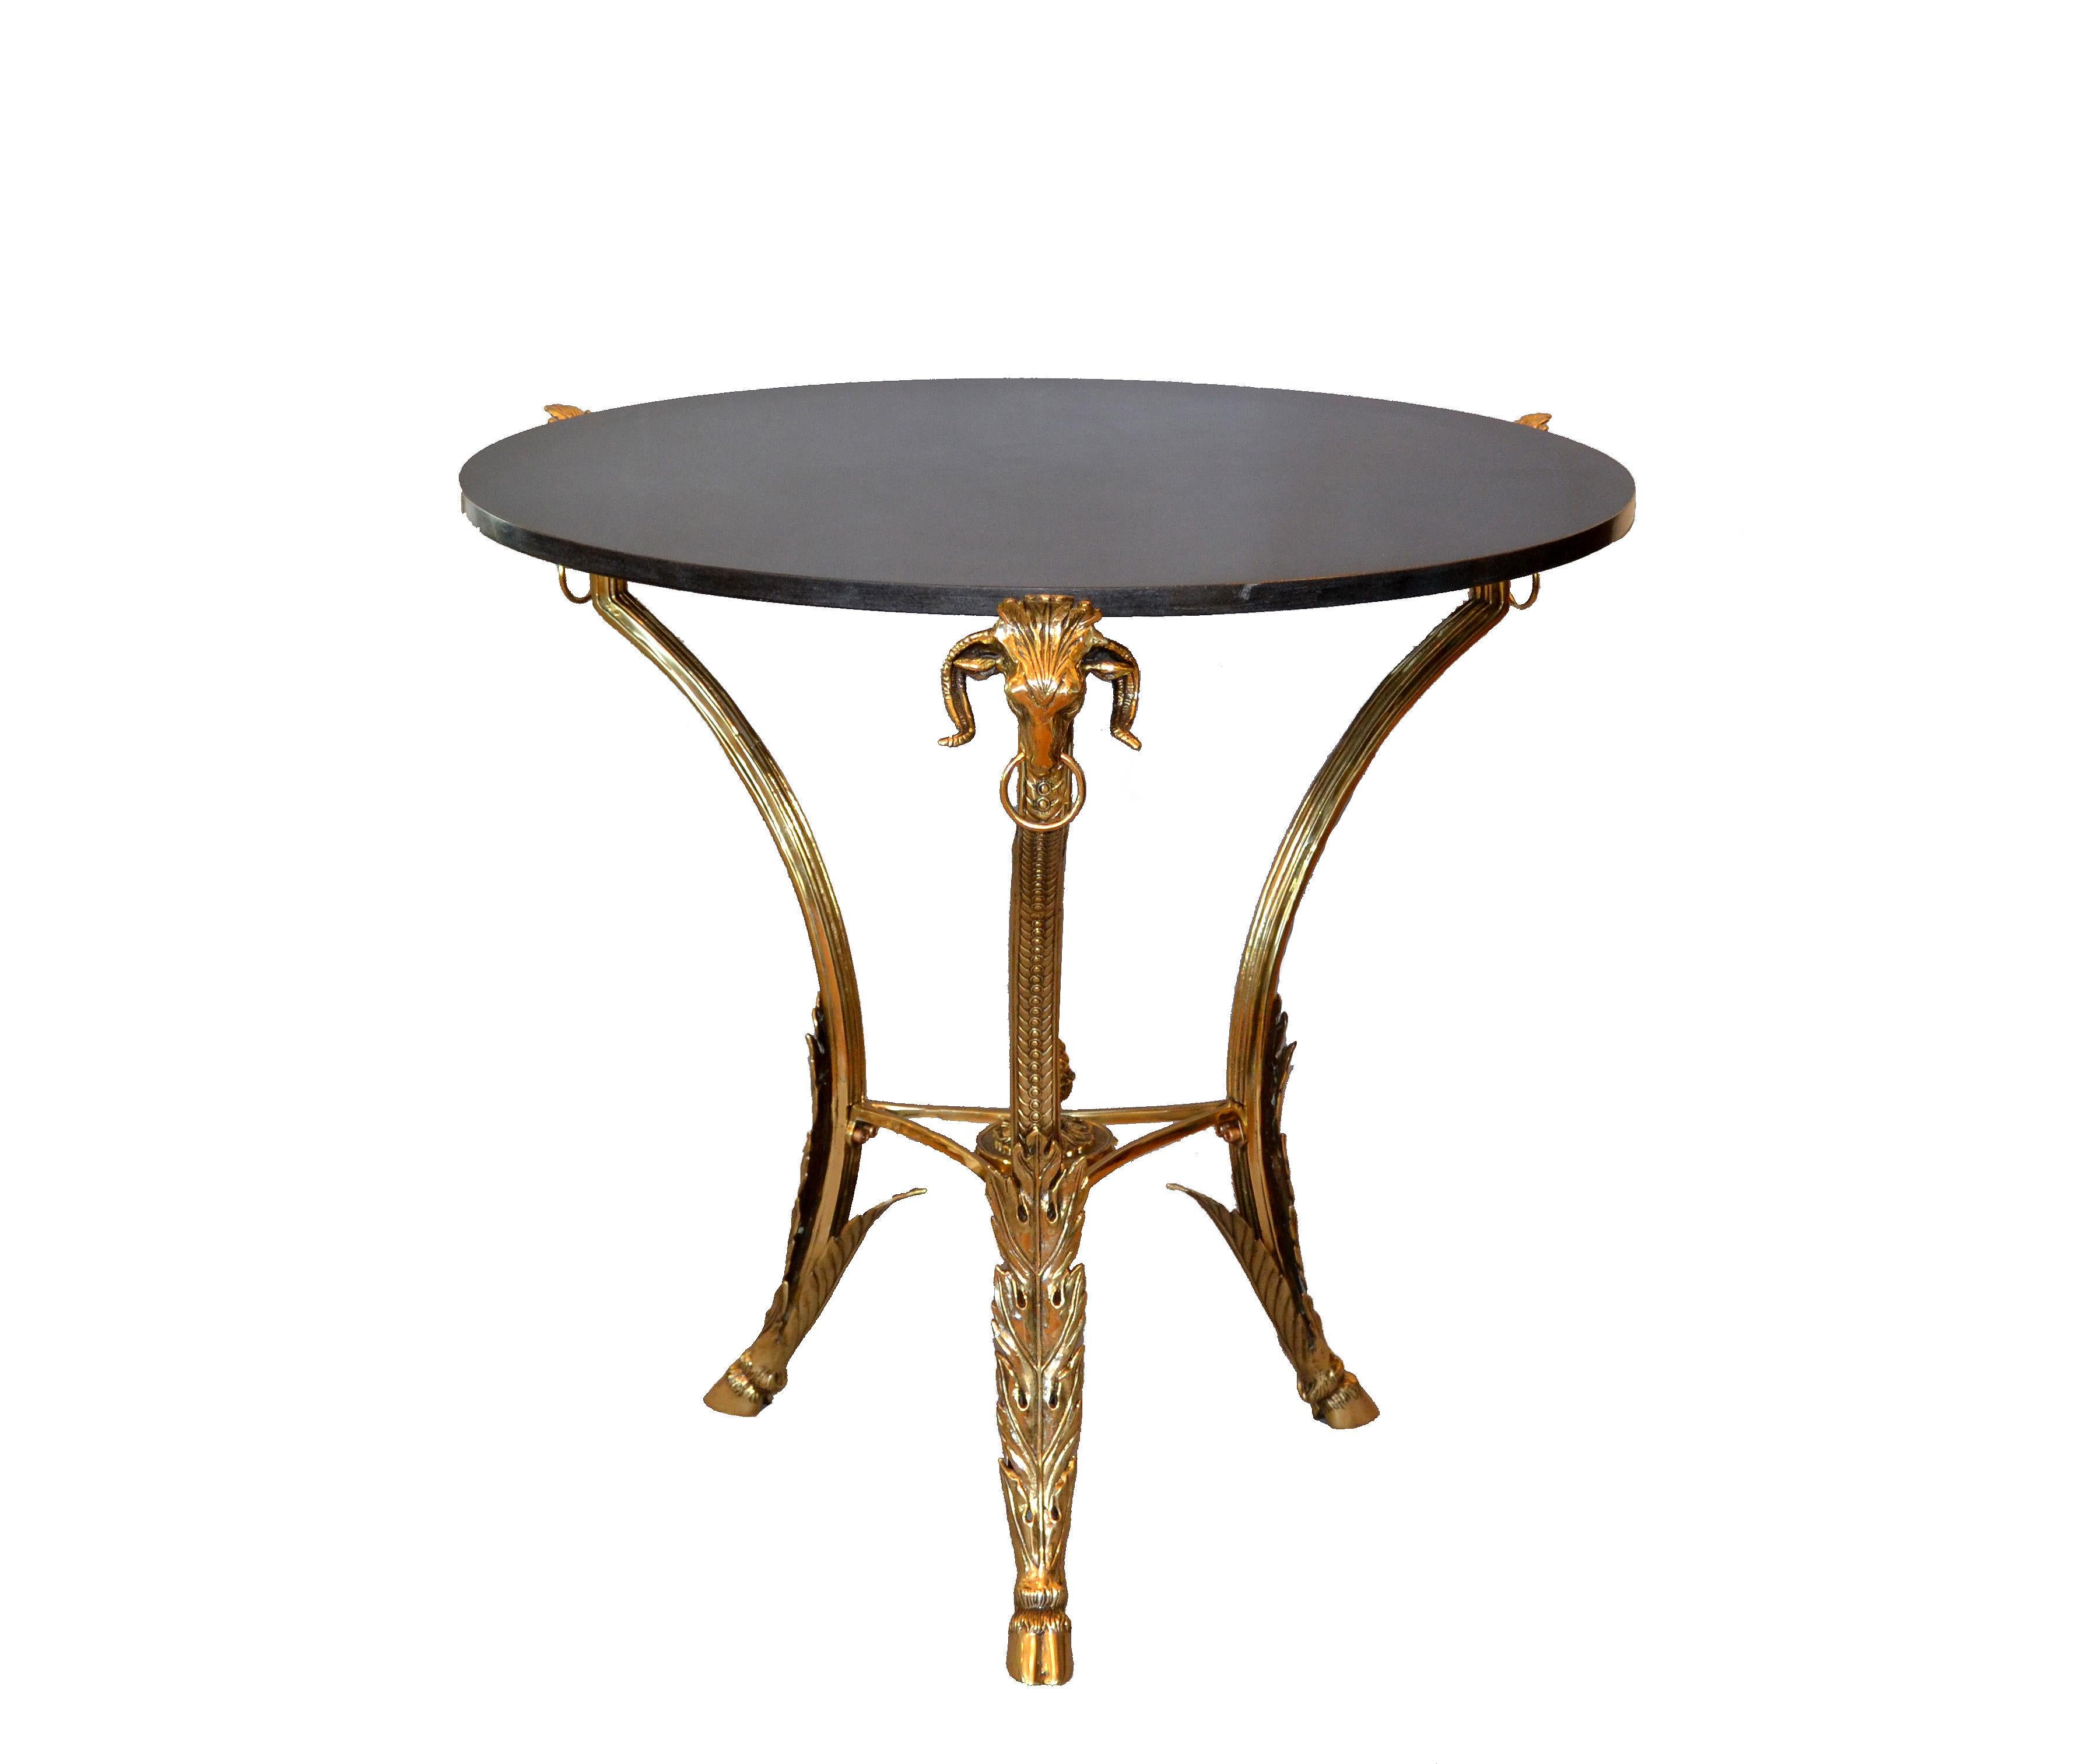 Cette table à café ou à cocktail ronde en bronze français de style Guéridon est dotée d'un lourd plateau en granit de couleur gris foncé.
Cette table présente une variété de détails en bronze comme les têtes de béliers, les pieds griffes et les